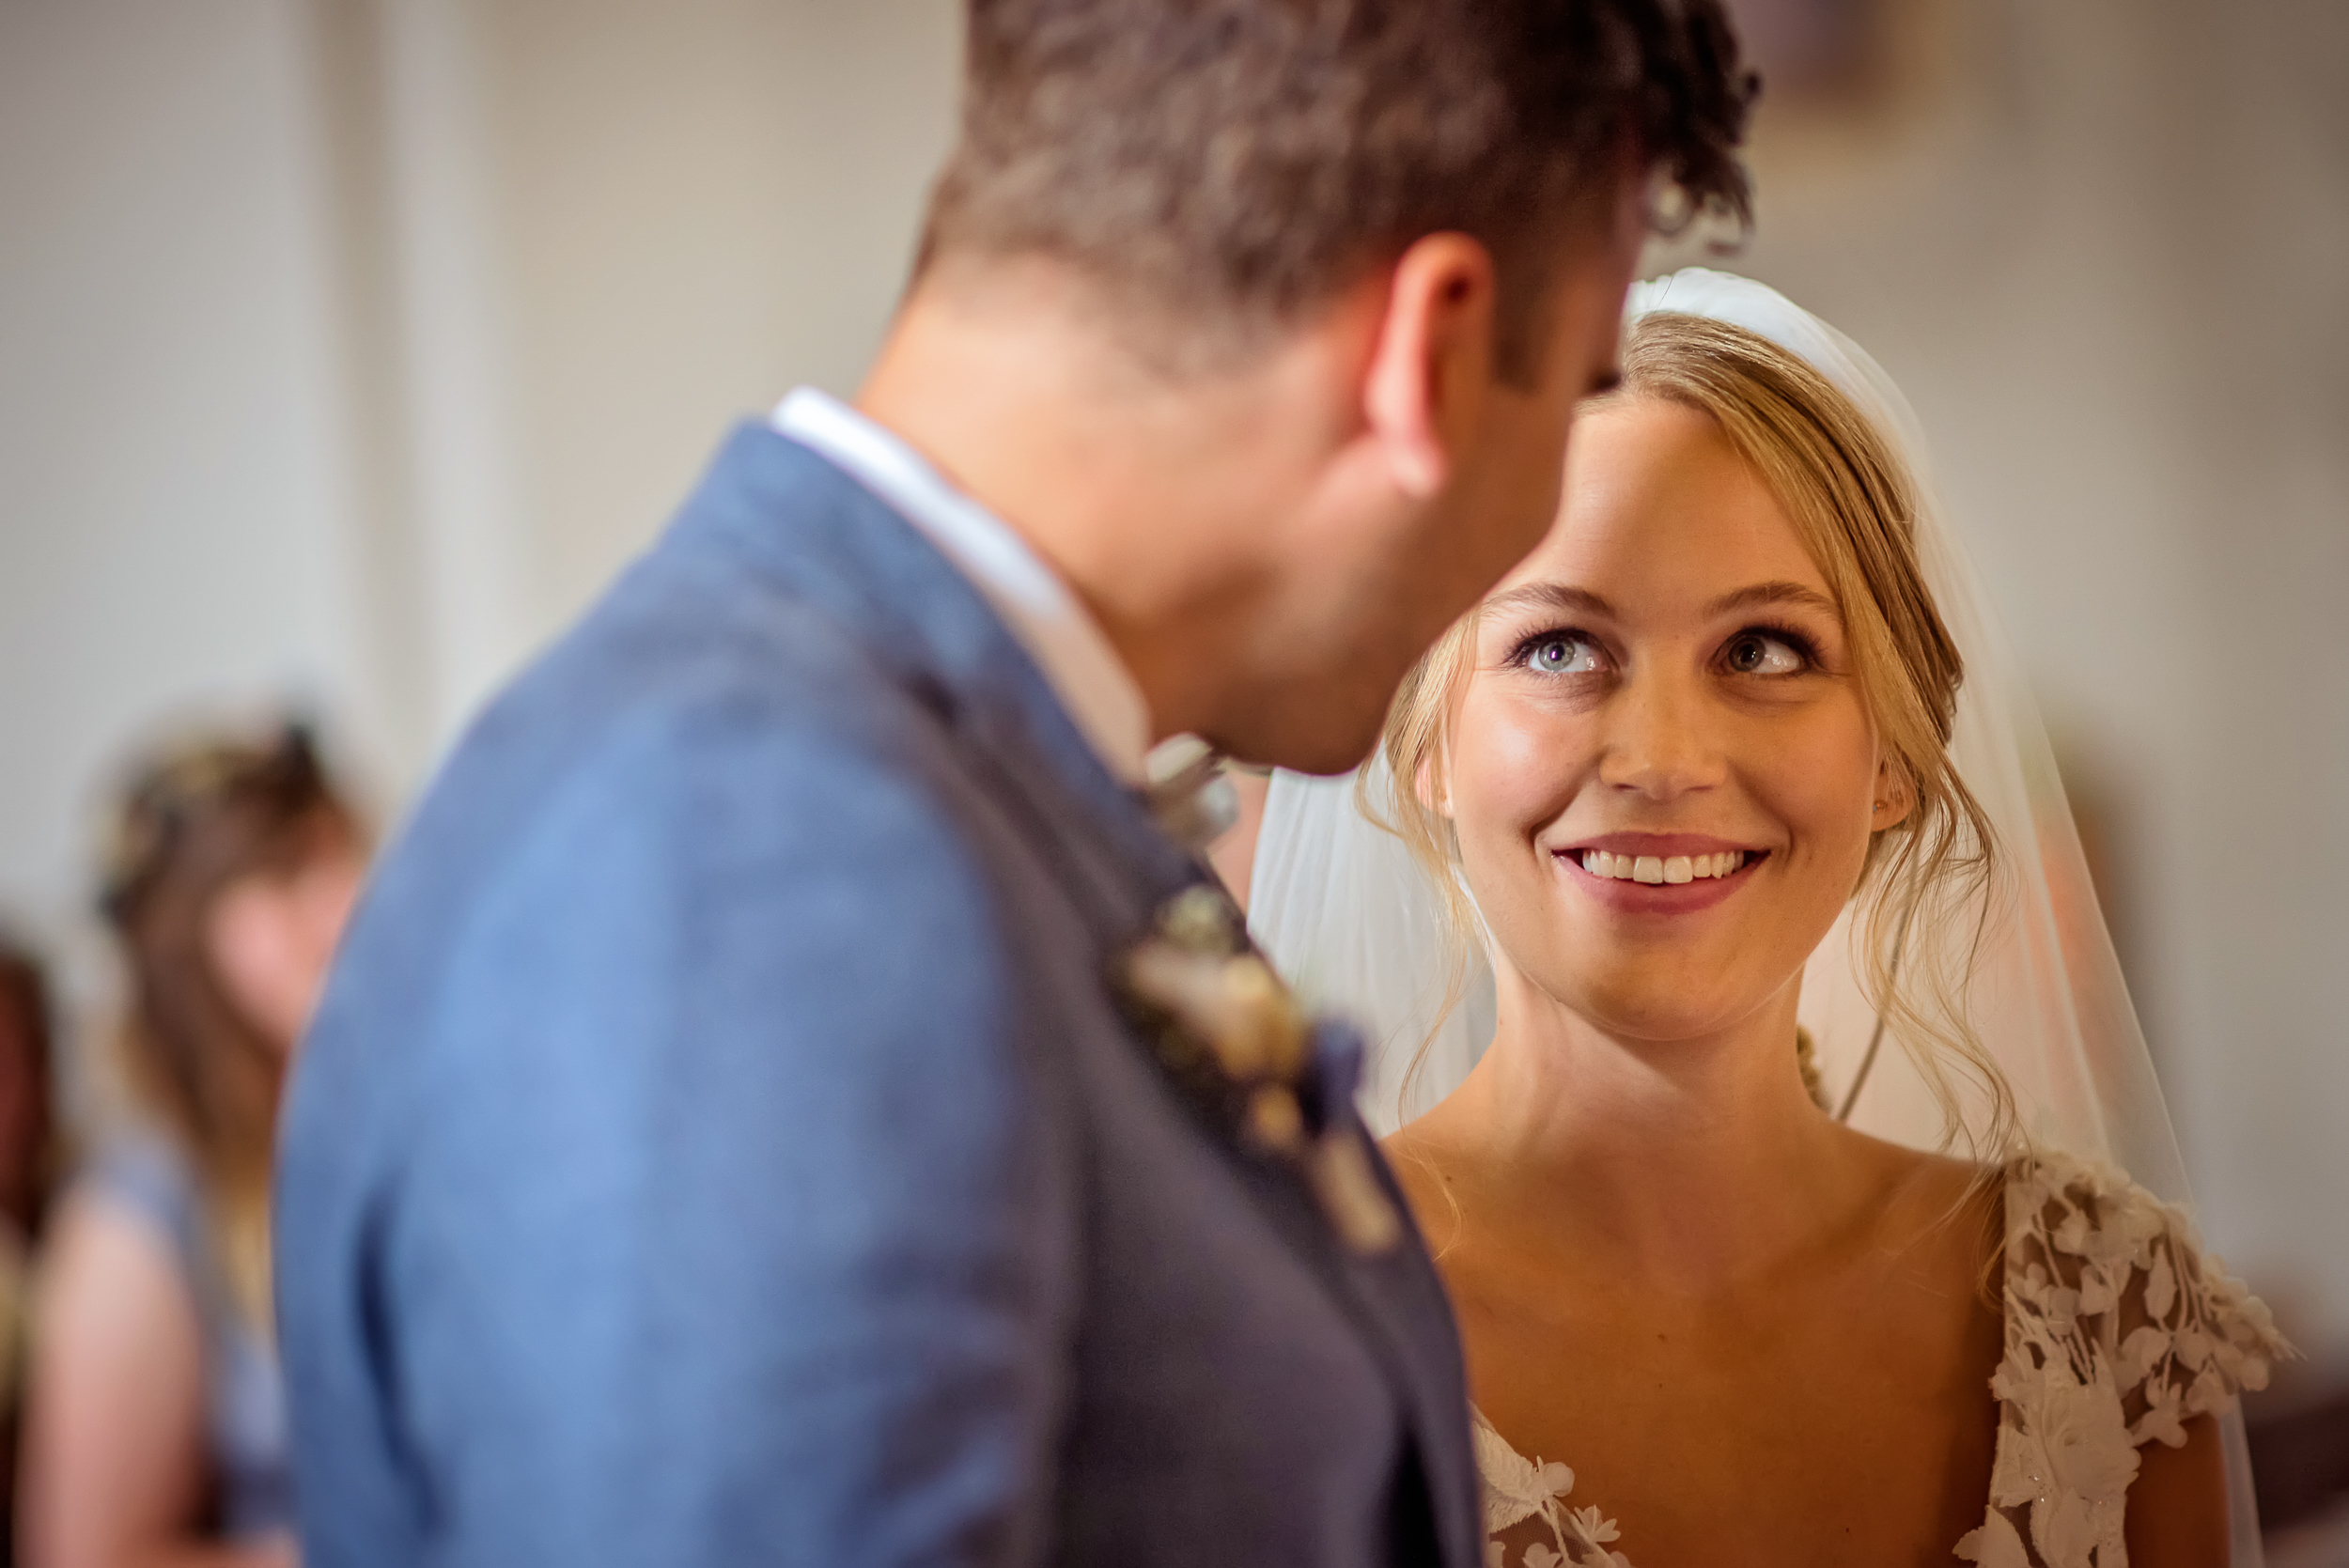 Portraitfotografie der Braut mit Fokus auf dem Wort "Ja", das sie ausgesprochen hat, während sie lacht und ihren Bräutigam mit großen grünen Augen liebevoll ansieht.